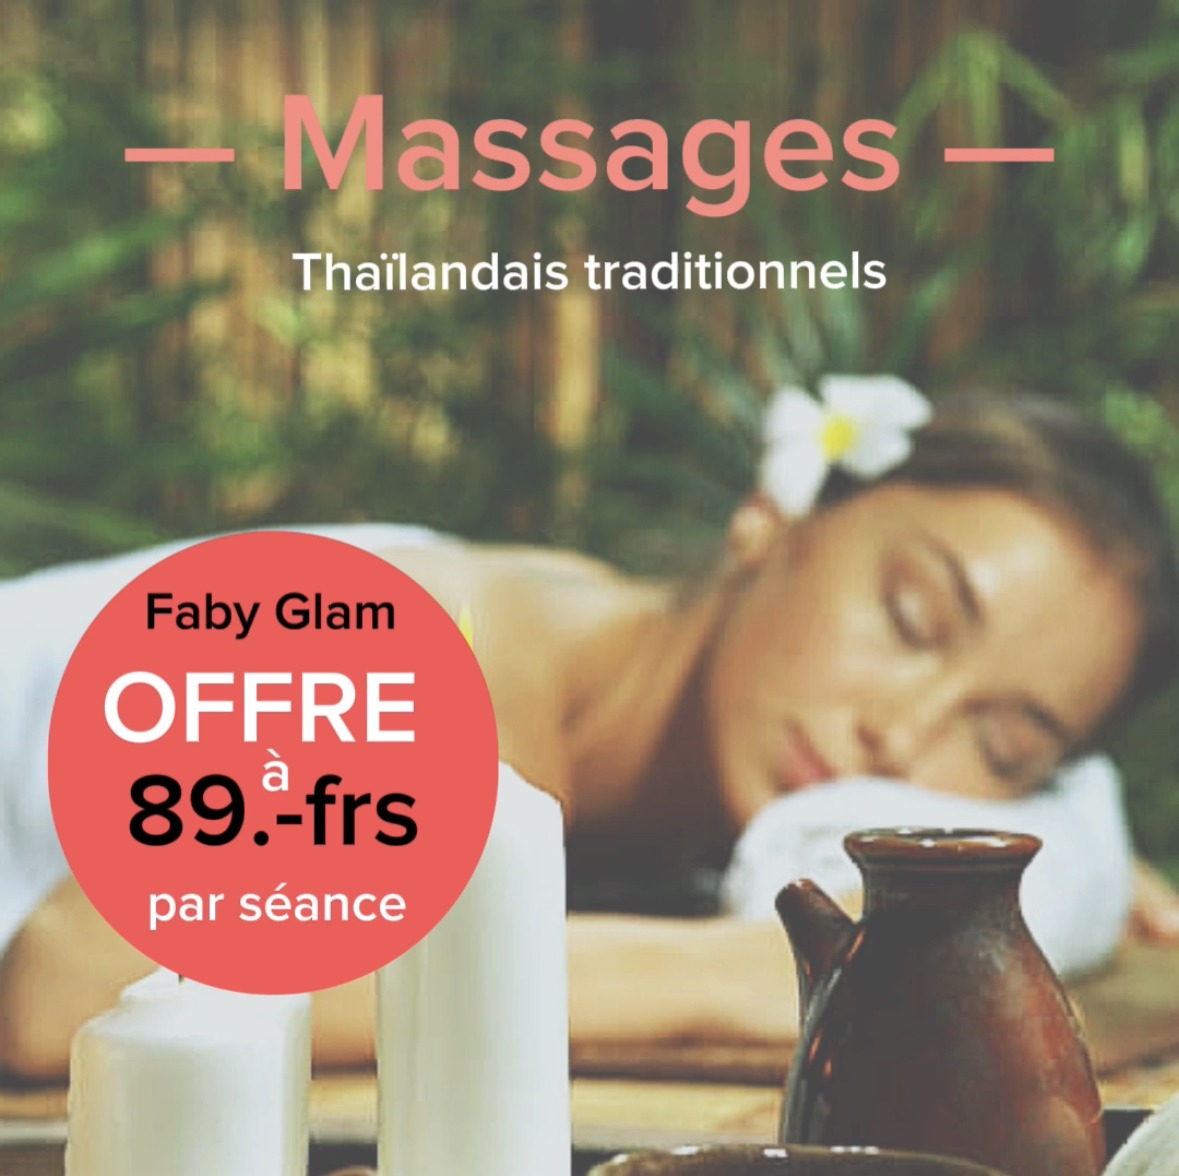 massages thaïlandais traditionnels offre promotionnelle